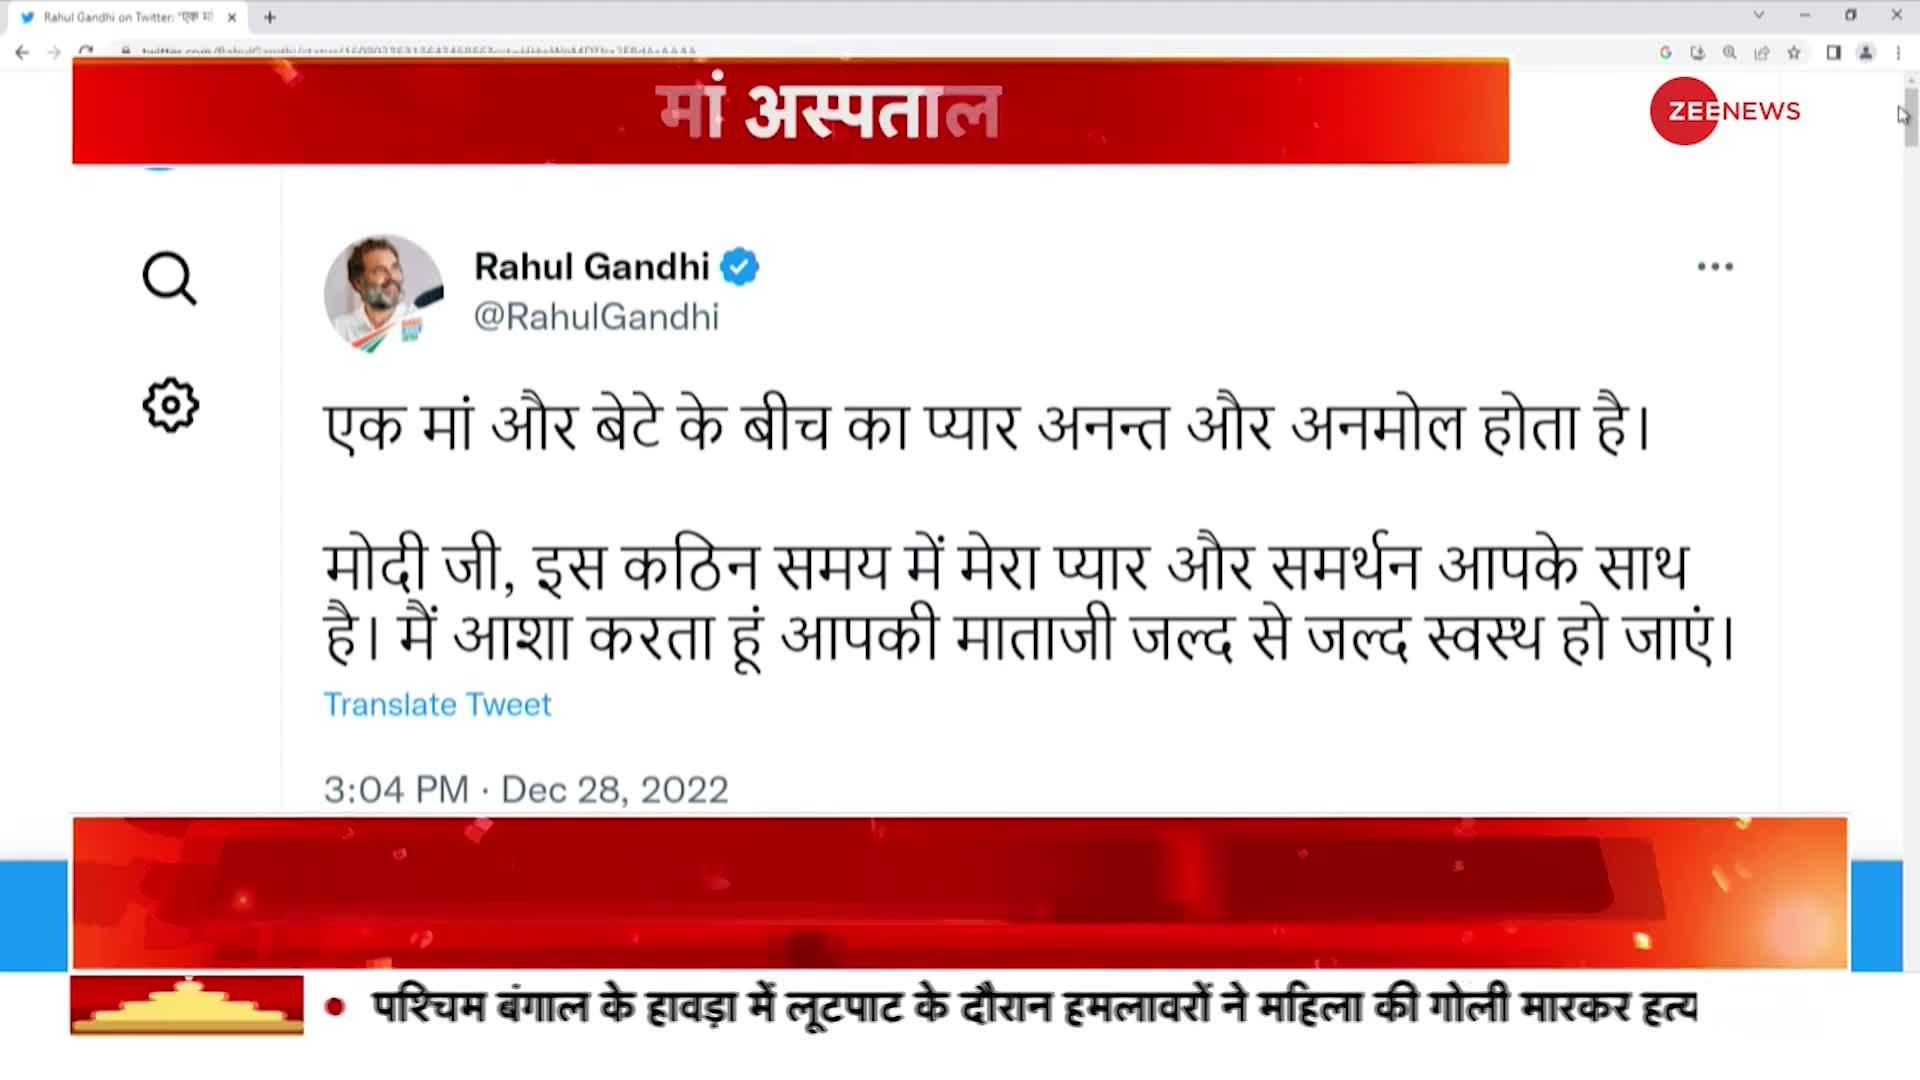 Heeraben Modi Admitted: PM Modi की मां हीराबेन के अस्पताल में भर्ती होने पर राहुल ने किया Tweet